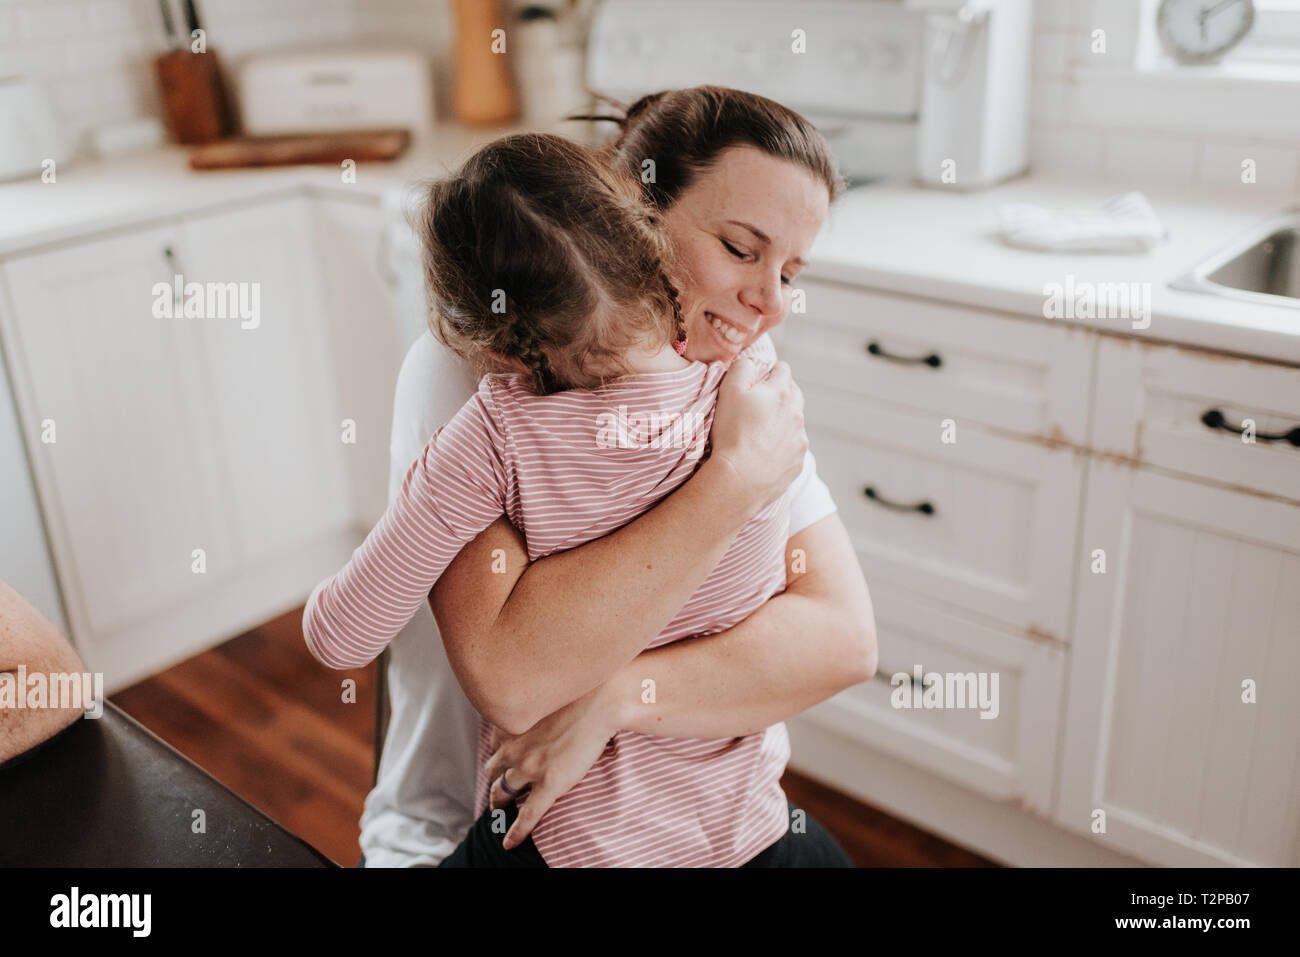 La Madre Abrazando A Su Hija En La Cocina Fotografía De Stock Alamy 